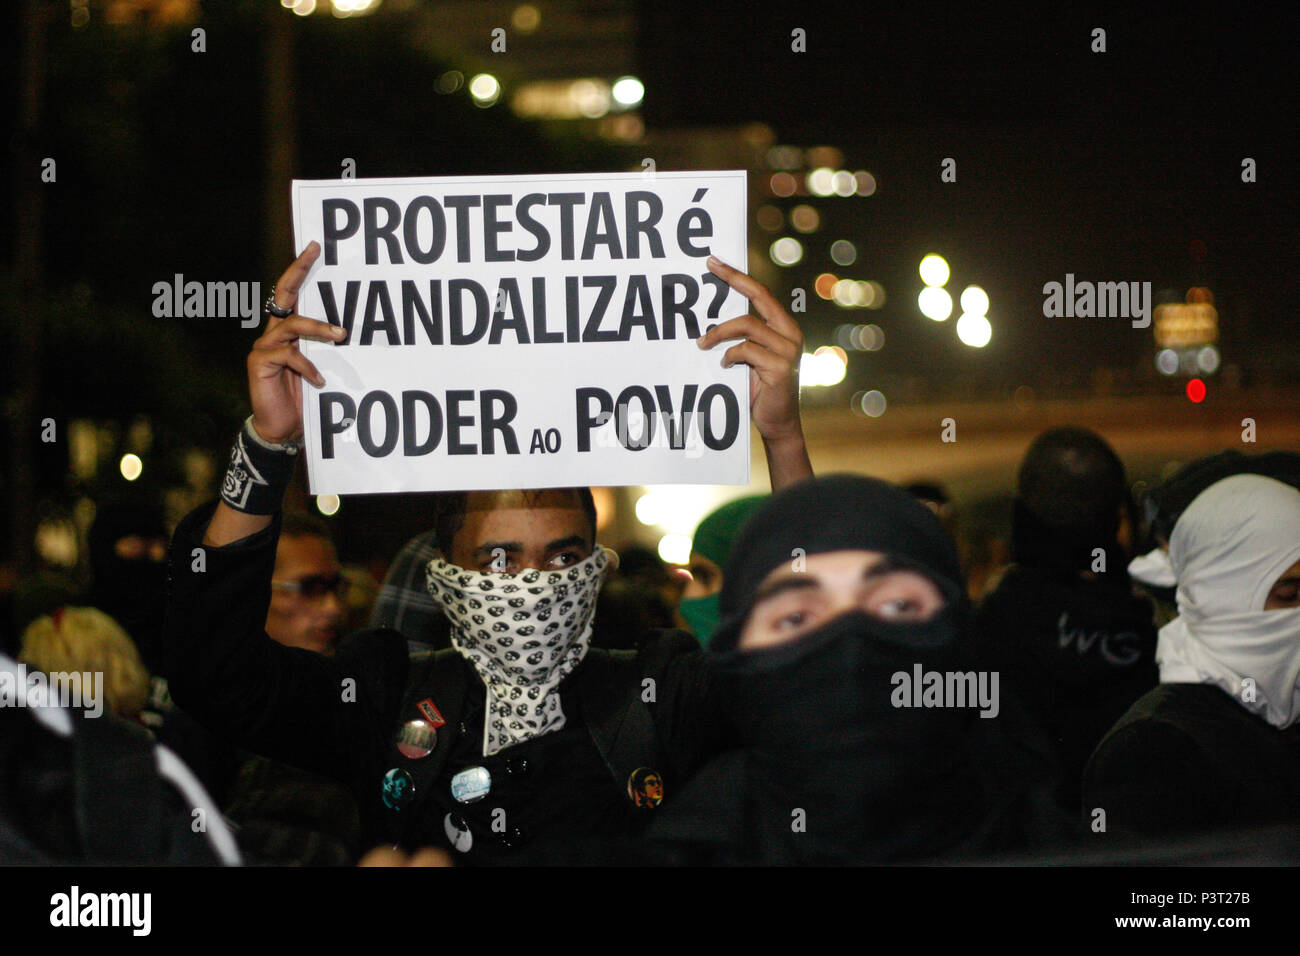 SÃO PAULO, SP - 01.08.2013: CARTAZ EM MANIFESTAÇÃO SP -  Manifestante mascarado segurando uma placa com a frase 'Protestar é vandalizar? Poder ao povo'. (Foto: Luis Blanco / Fotoarena) Stock Photo